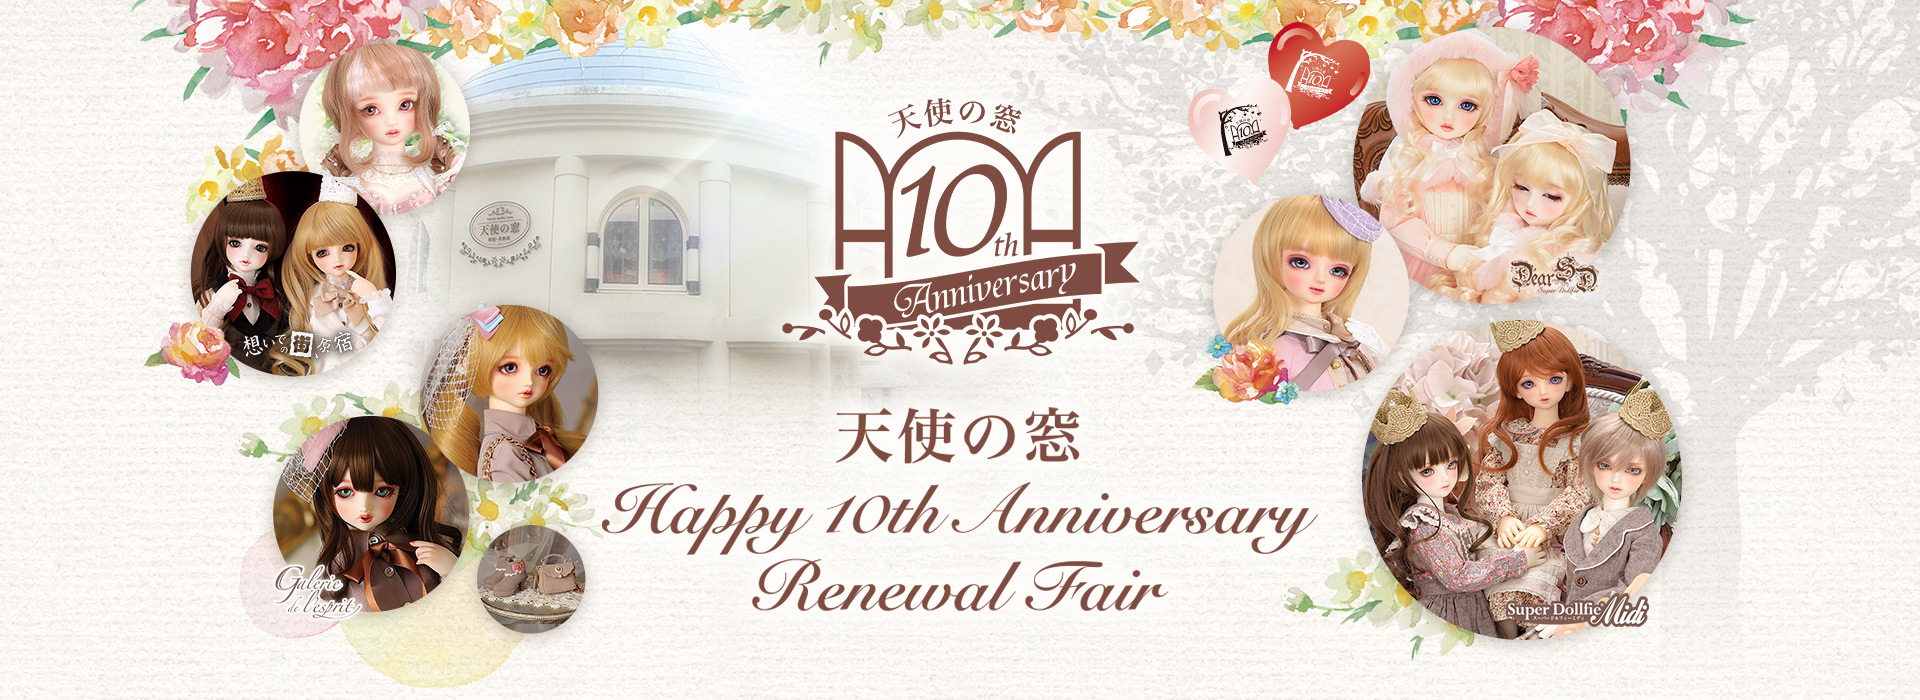 天使の窓 Happy 10th Anniversary Renewal Fair